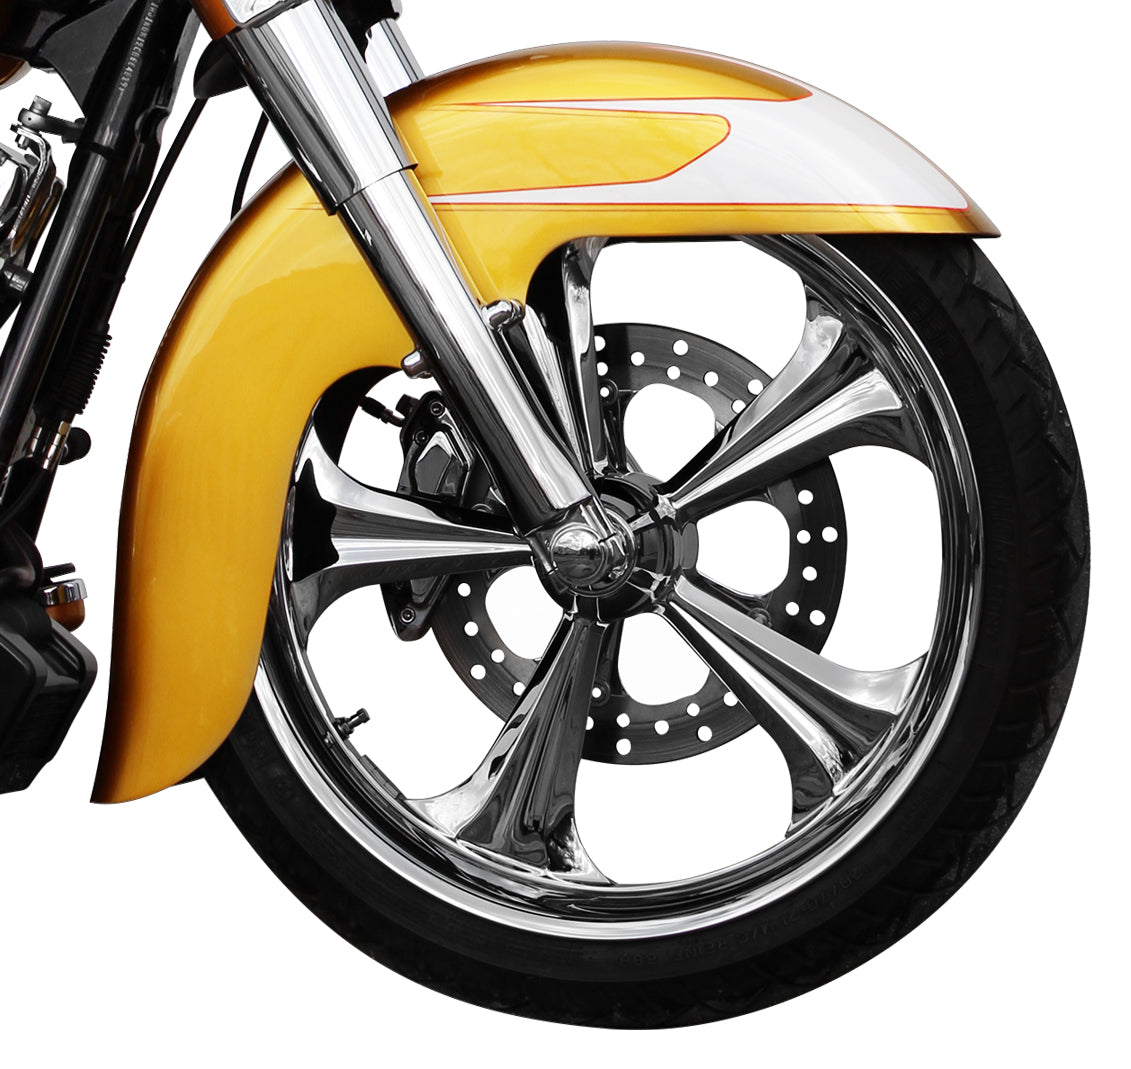 21" Benchmark Front Fender FIT KIT for Harley-Davidson 2014-2023 Touring Motorcycle Models(Benchmark - 21")